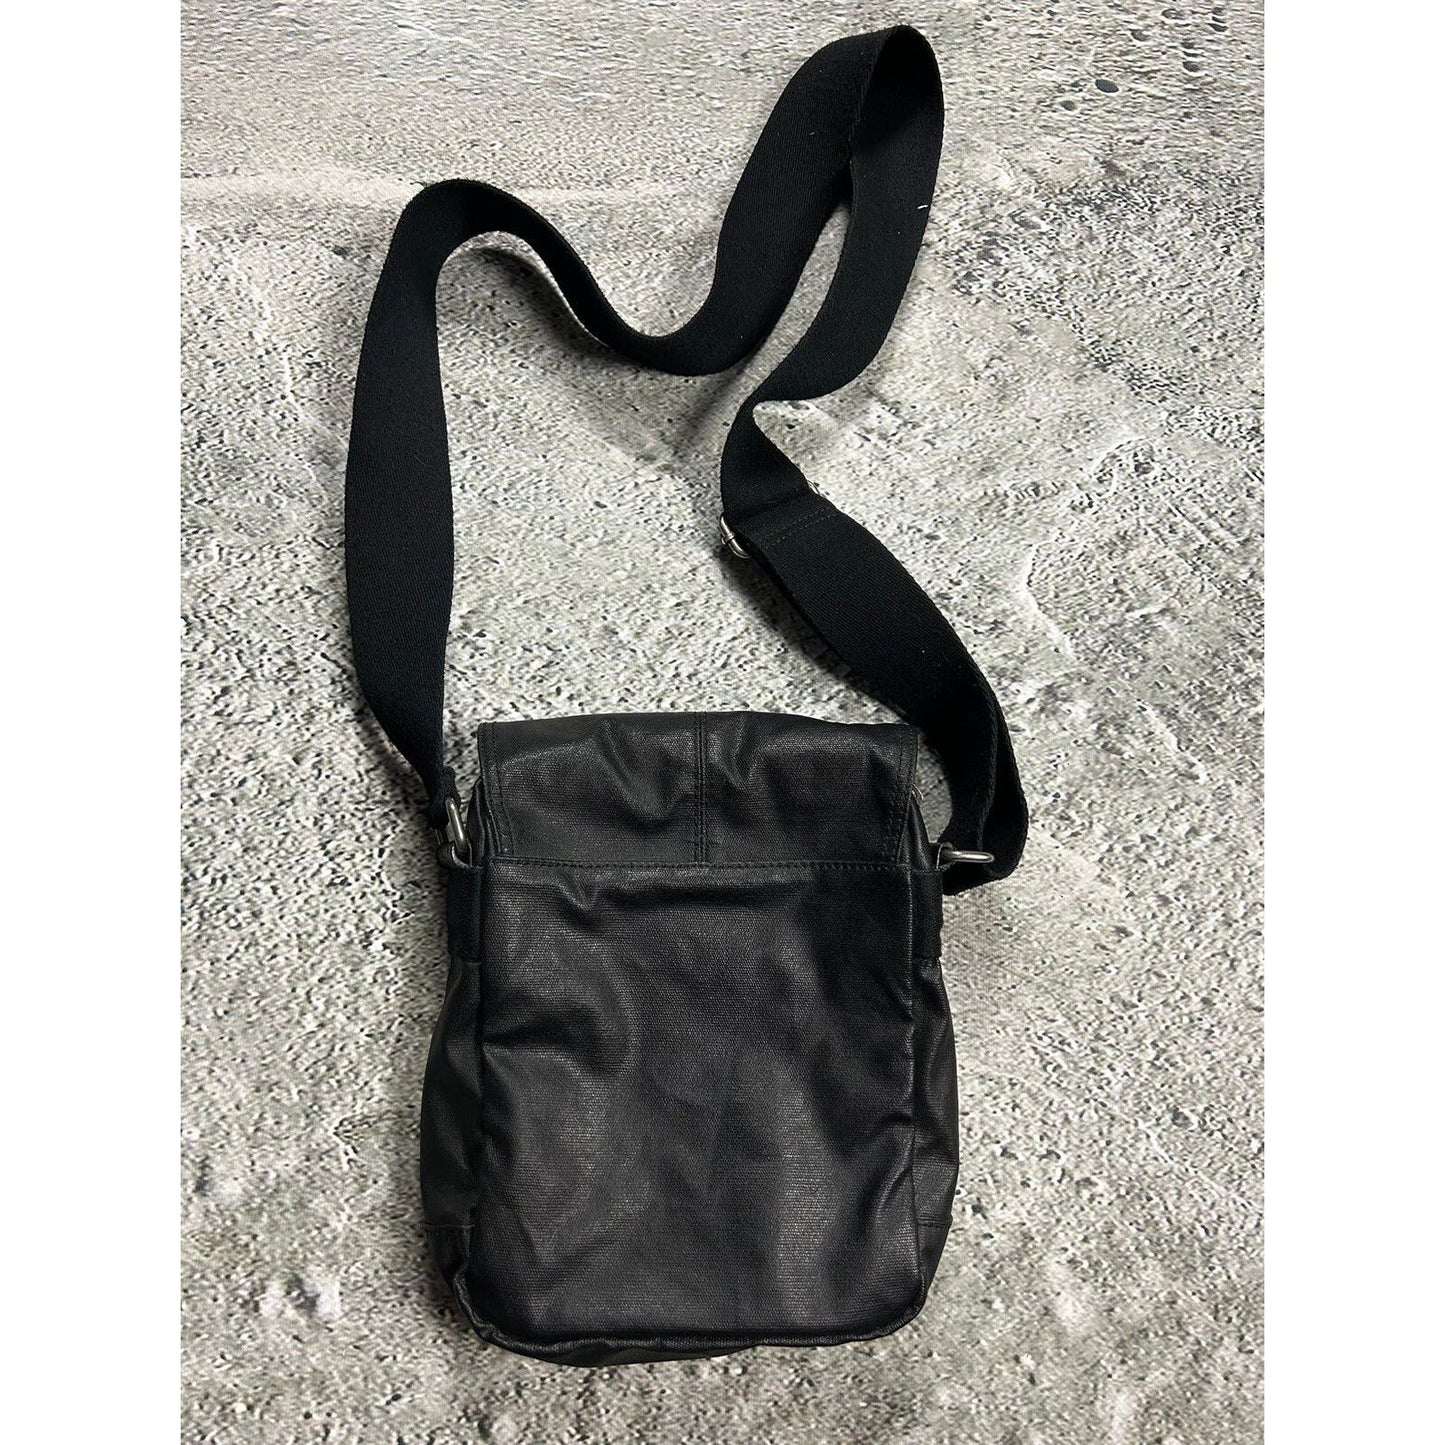 Tommy Hilfiger shoulder bag black